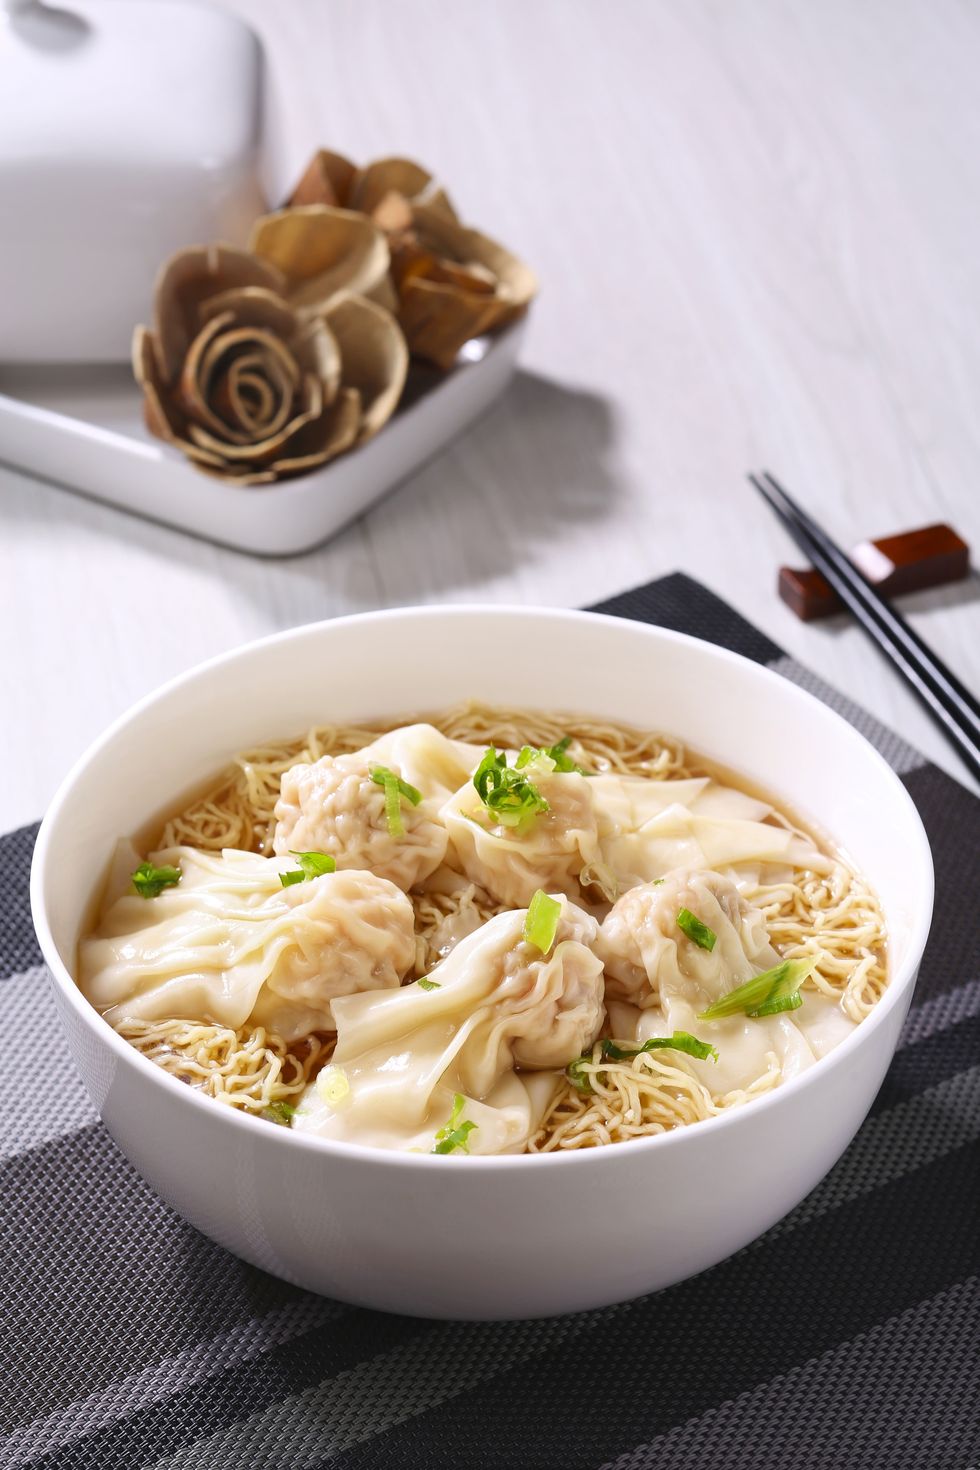 Dish, Food, Cuisine, Ingredient, Noodle soup, Wonton noodles, Wonton, Chinese food, Rice noodles, Noodle, 